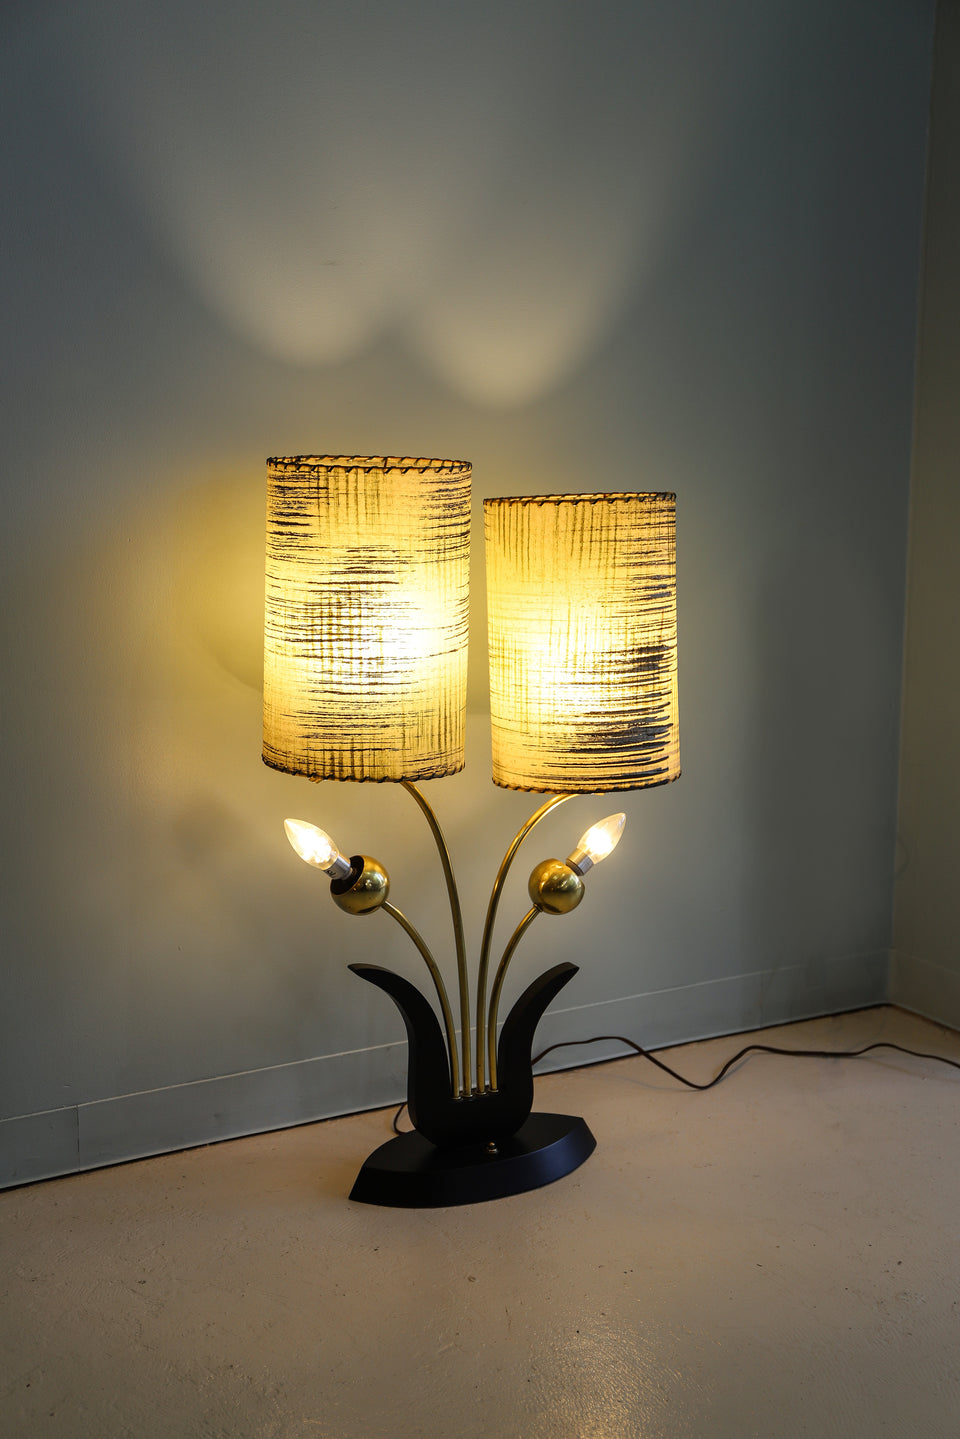 US Midcentury Vintage Majestic Lamp 50’s/アメリカヴィンテージ マジェスティックランプ フロアスタンド ミッドセンチュリー 間接照明